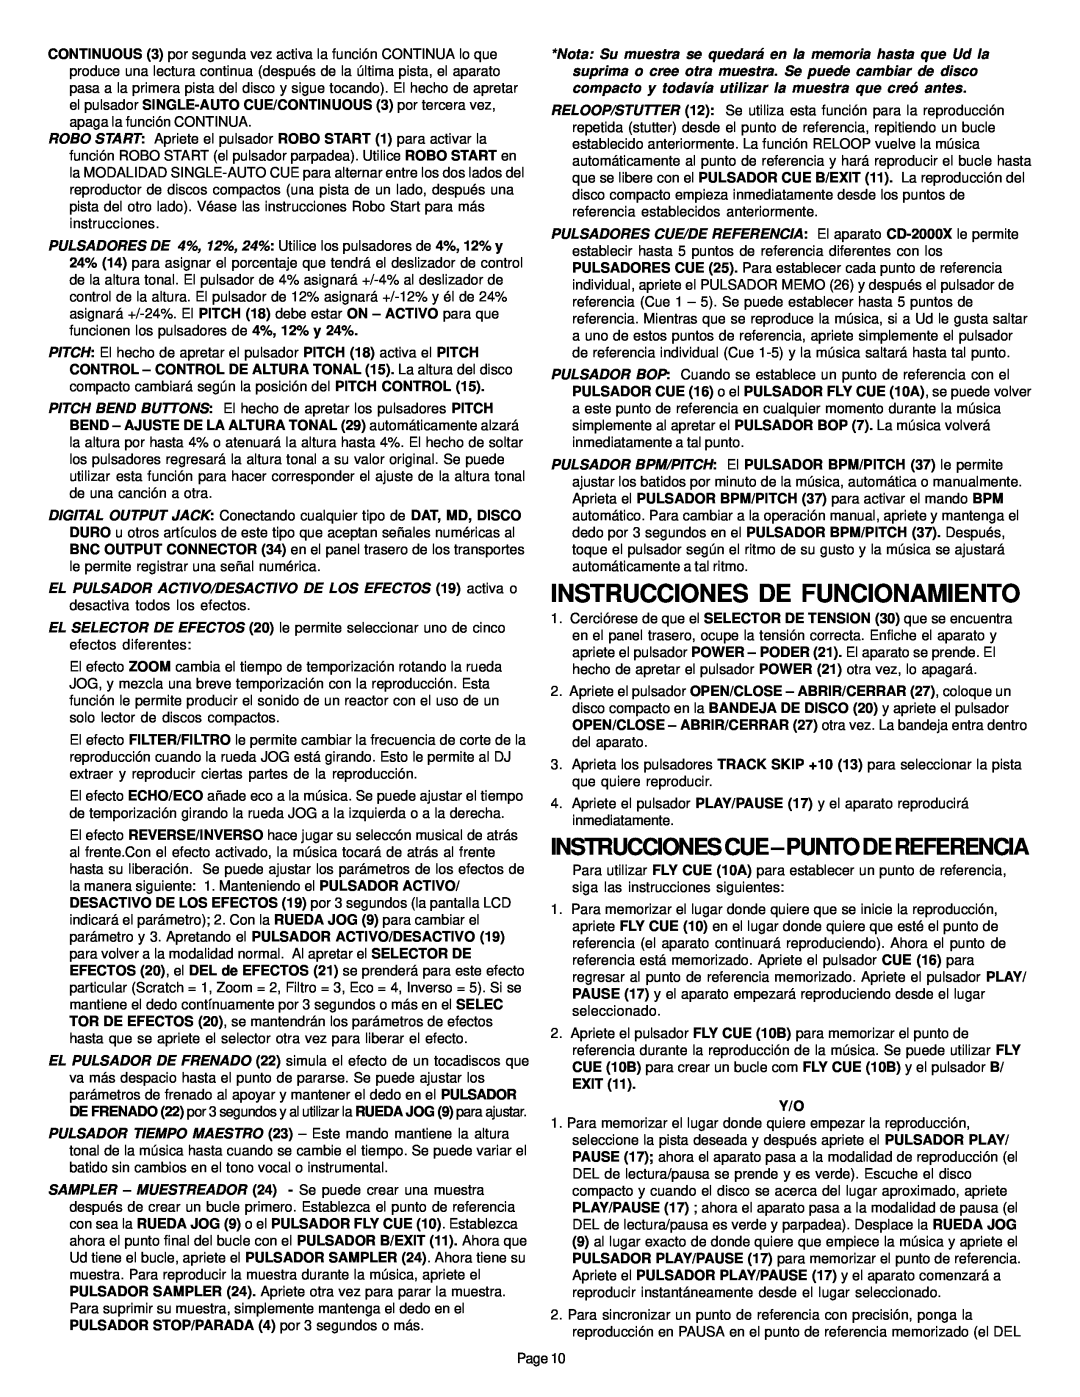 Gemini CD-2000X manual Instrucciones De Funcionamiento, Instruccionescue-Puntodereferencia 